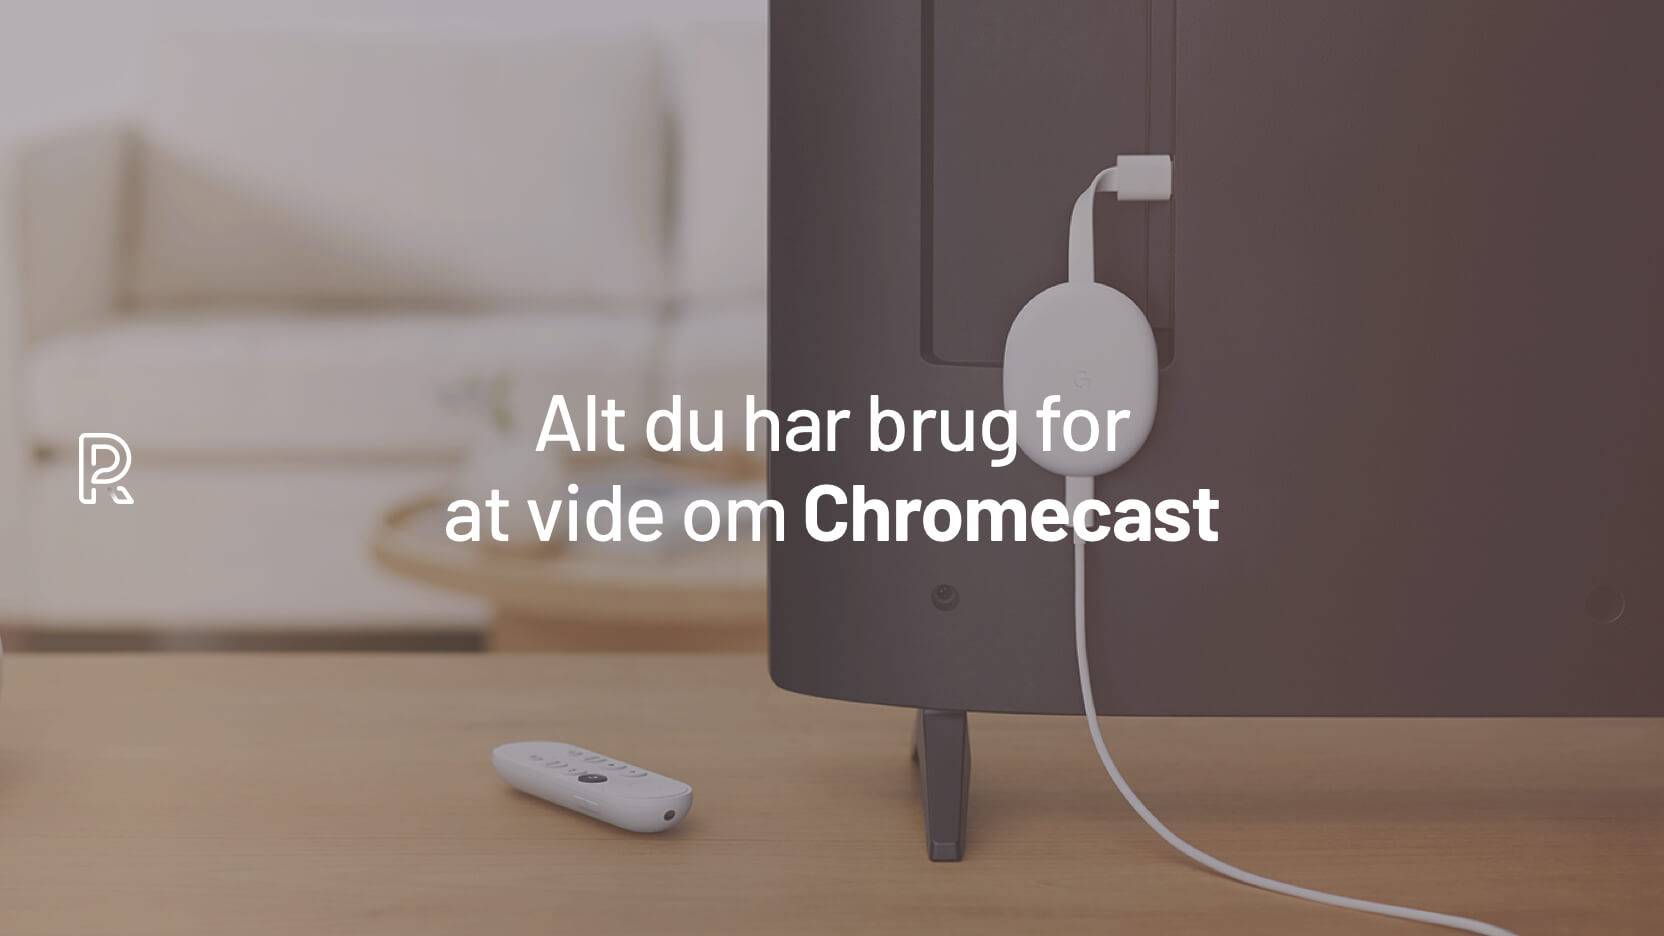 Alt du om Chromecast, også kendt som